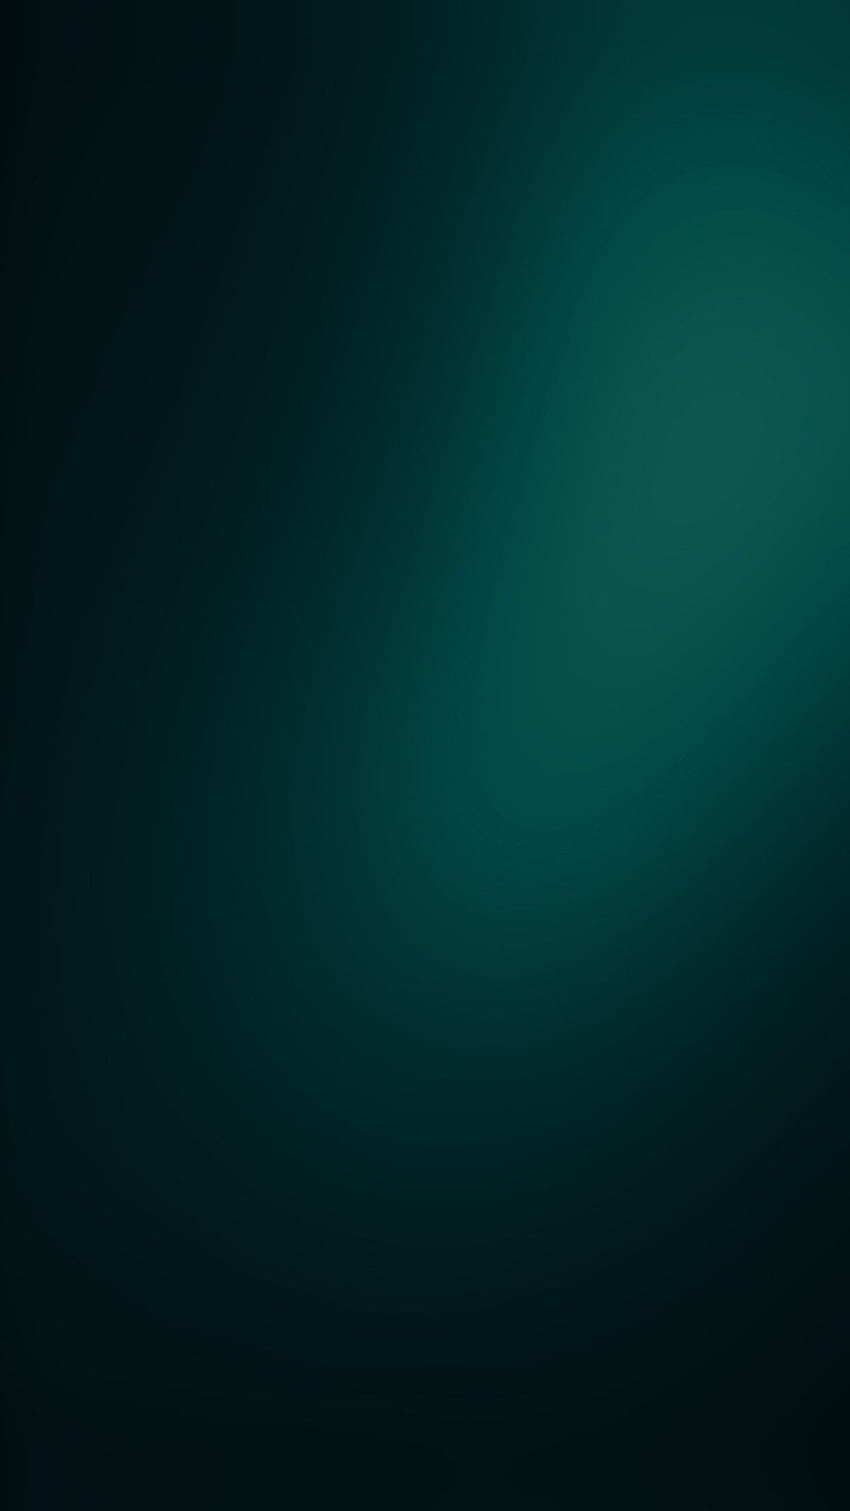 iPhone verde oscuro, iPhone con tema oscuro fondo de pantalla del teléfono